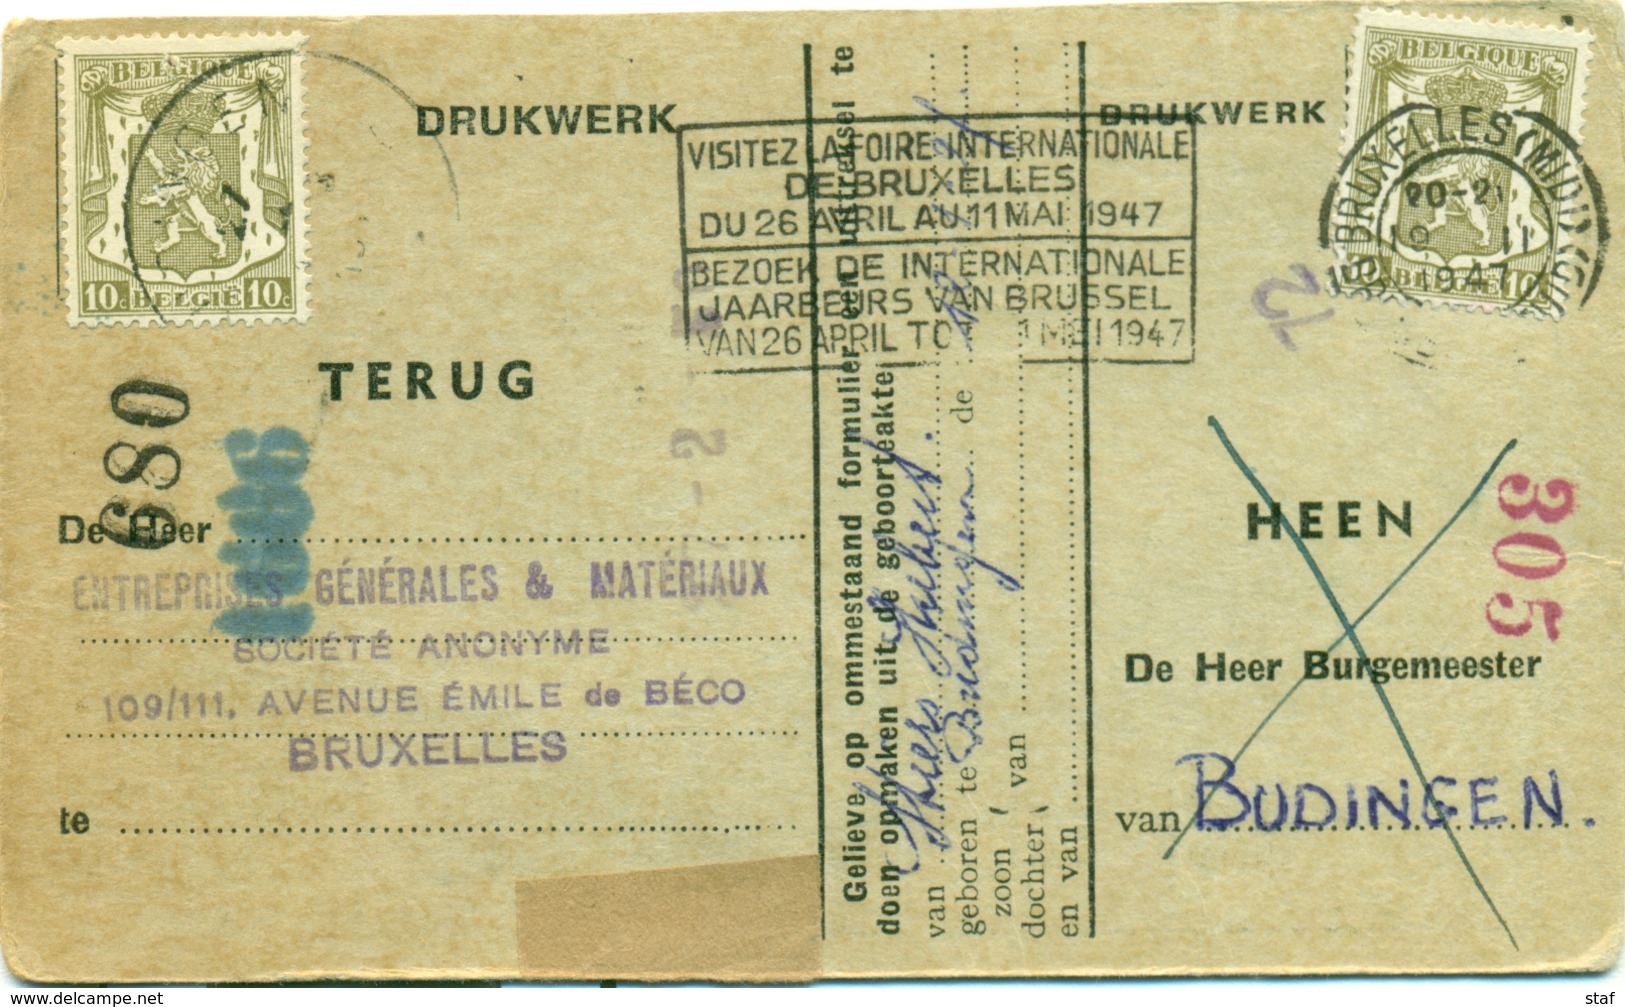 Visitez La Foire Inernationale De Bruxelles Du 26 Avril Au 11 Mai 1947 - Bezoek De Internationale Jaarbeurs Van Brussel - Vlagstempels